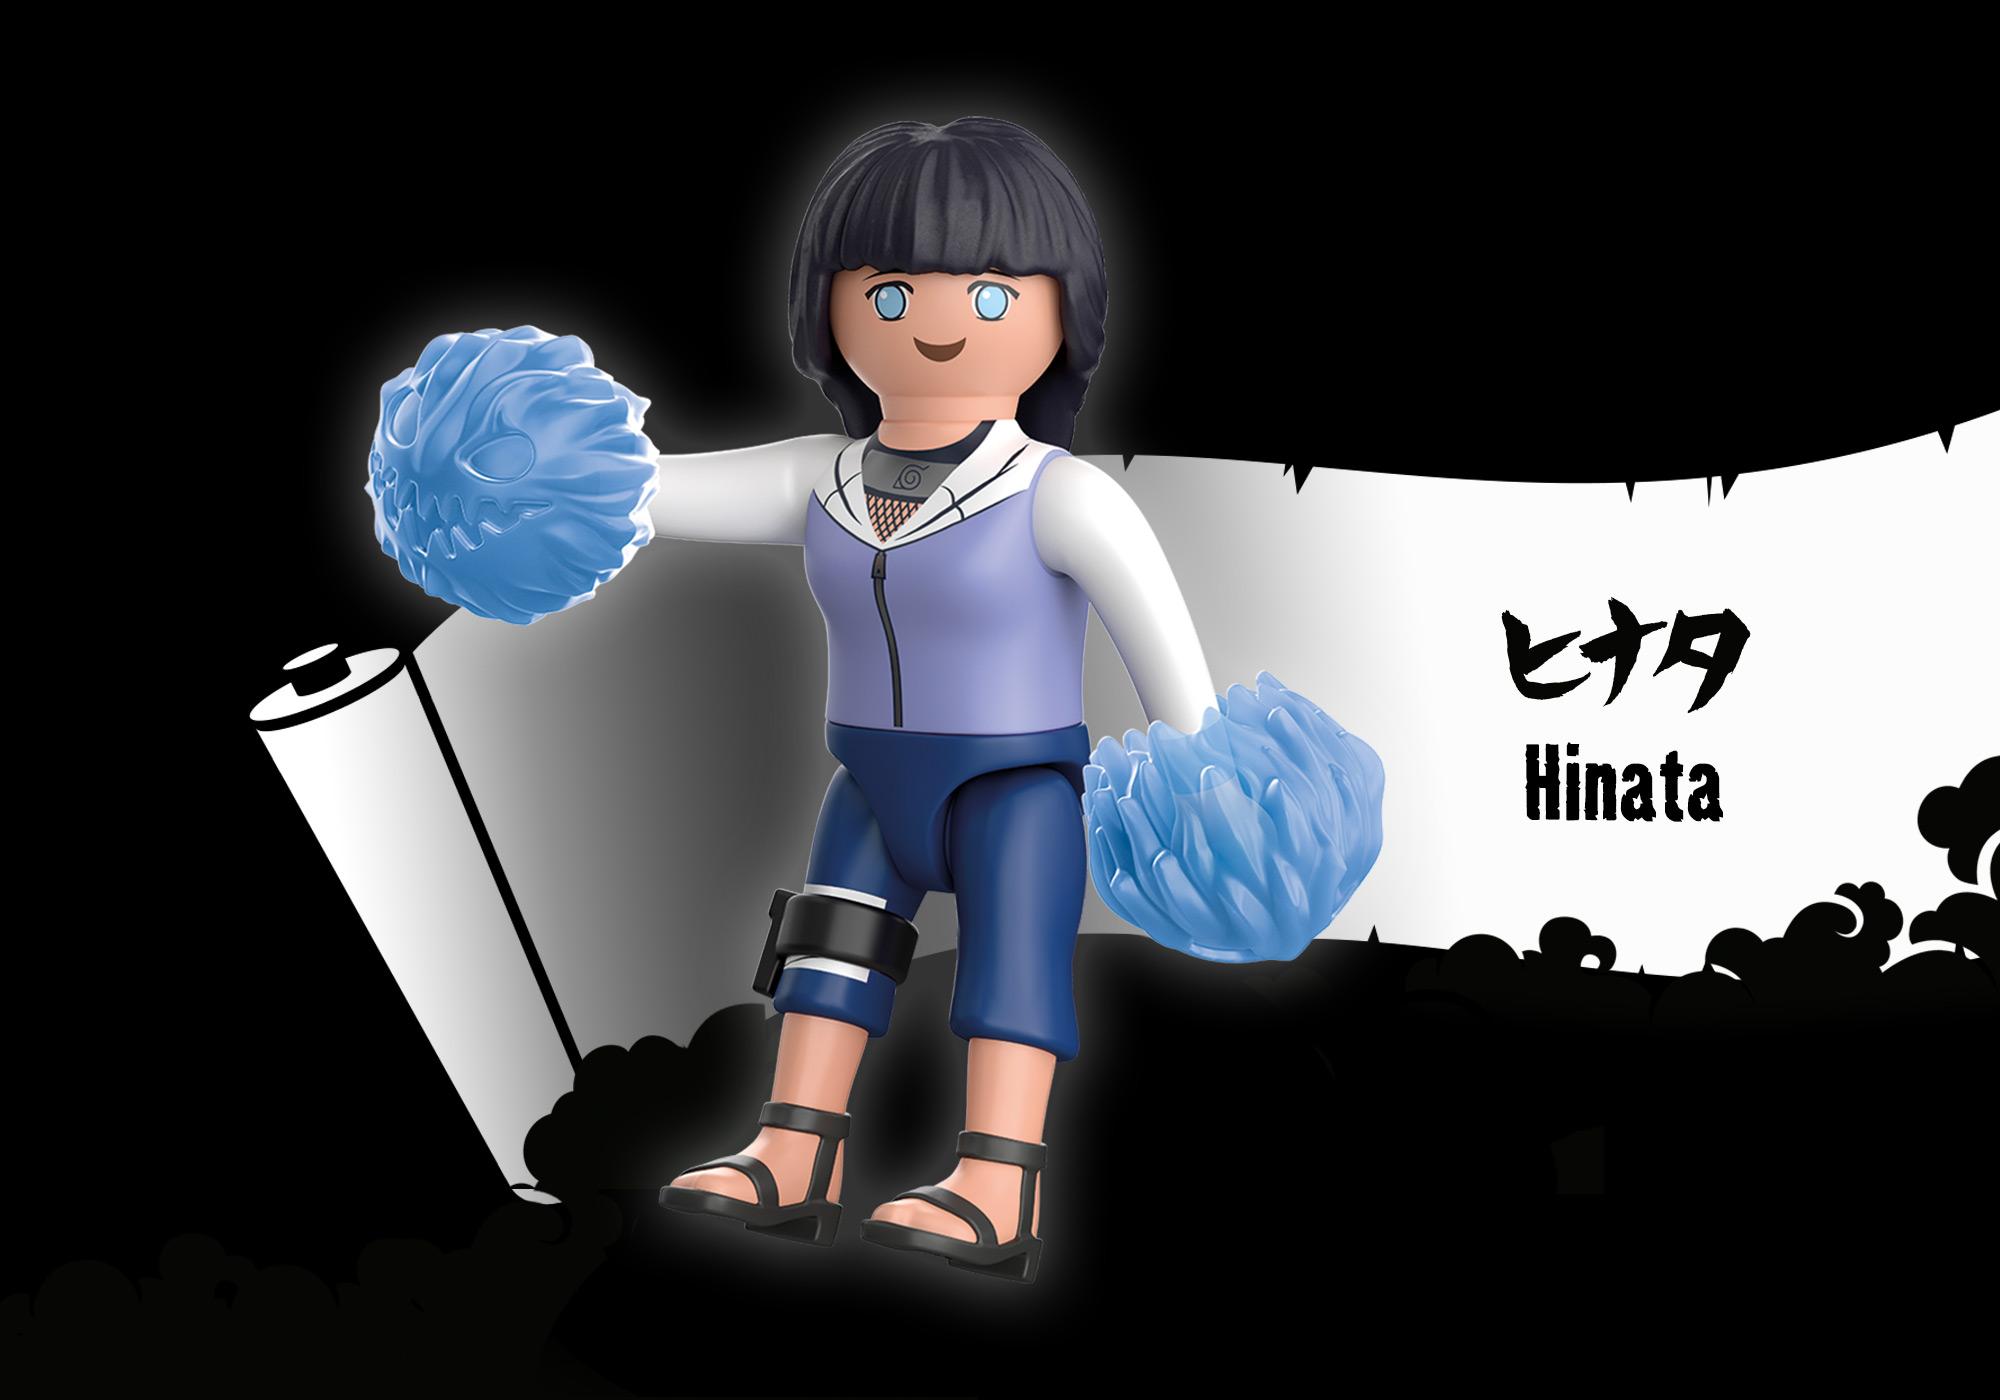 PLAYMOBIL NARUTO - FIGURINE HINATA #71110 - PLAYMOBIL / Naruto